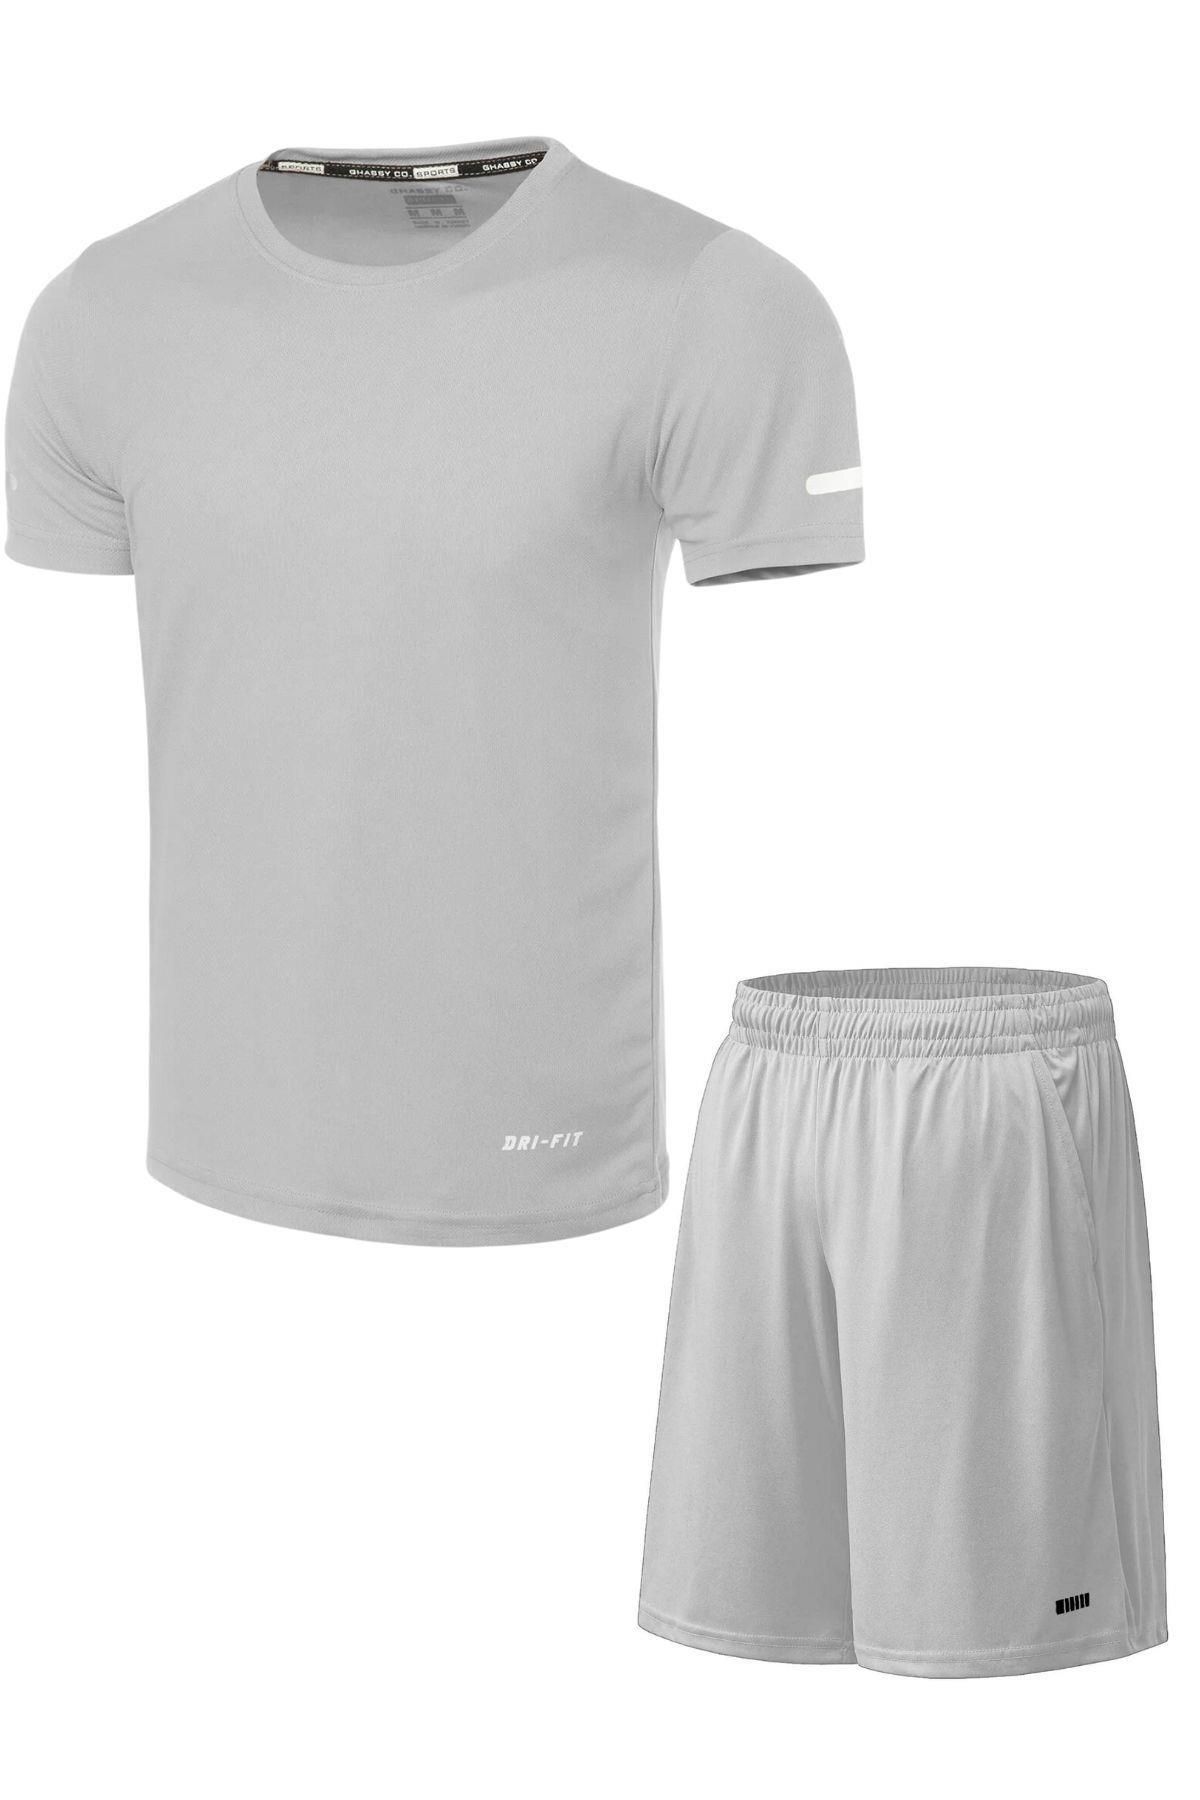 Ghassy Co Erkek 2'li Set Nem Emici Koşu Egzersiz Şort T-shirt Takım